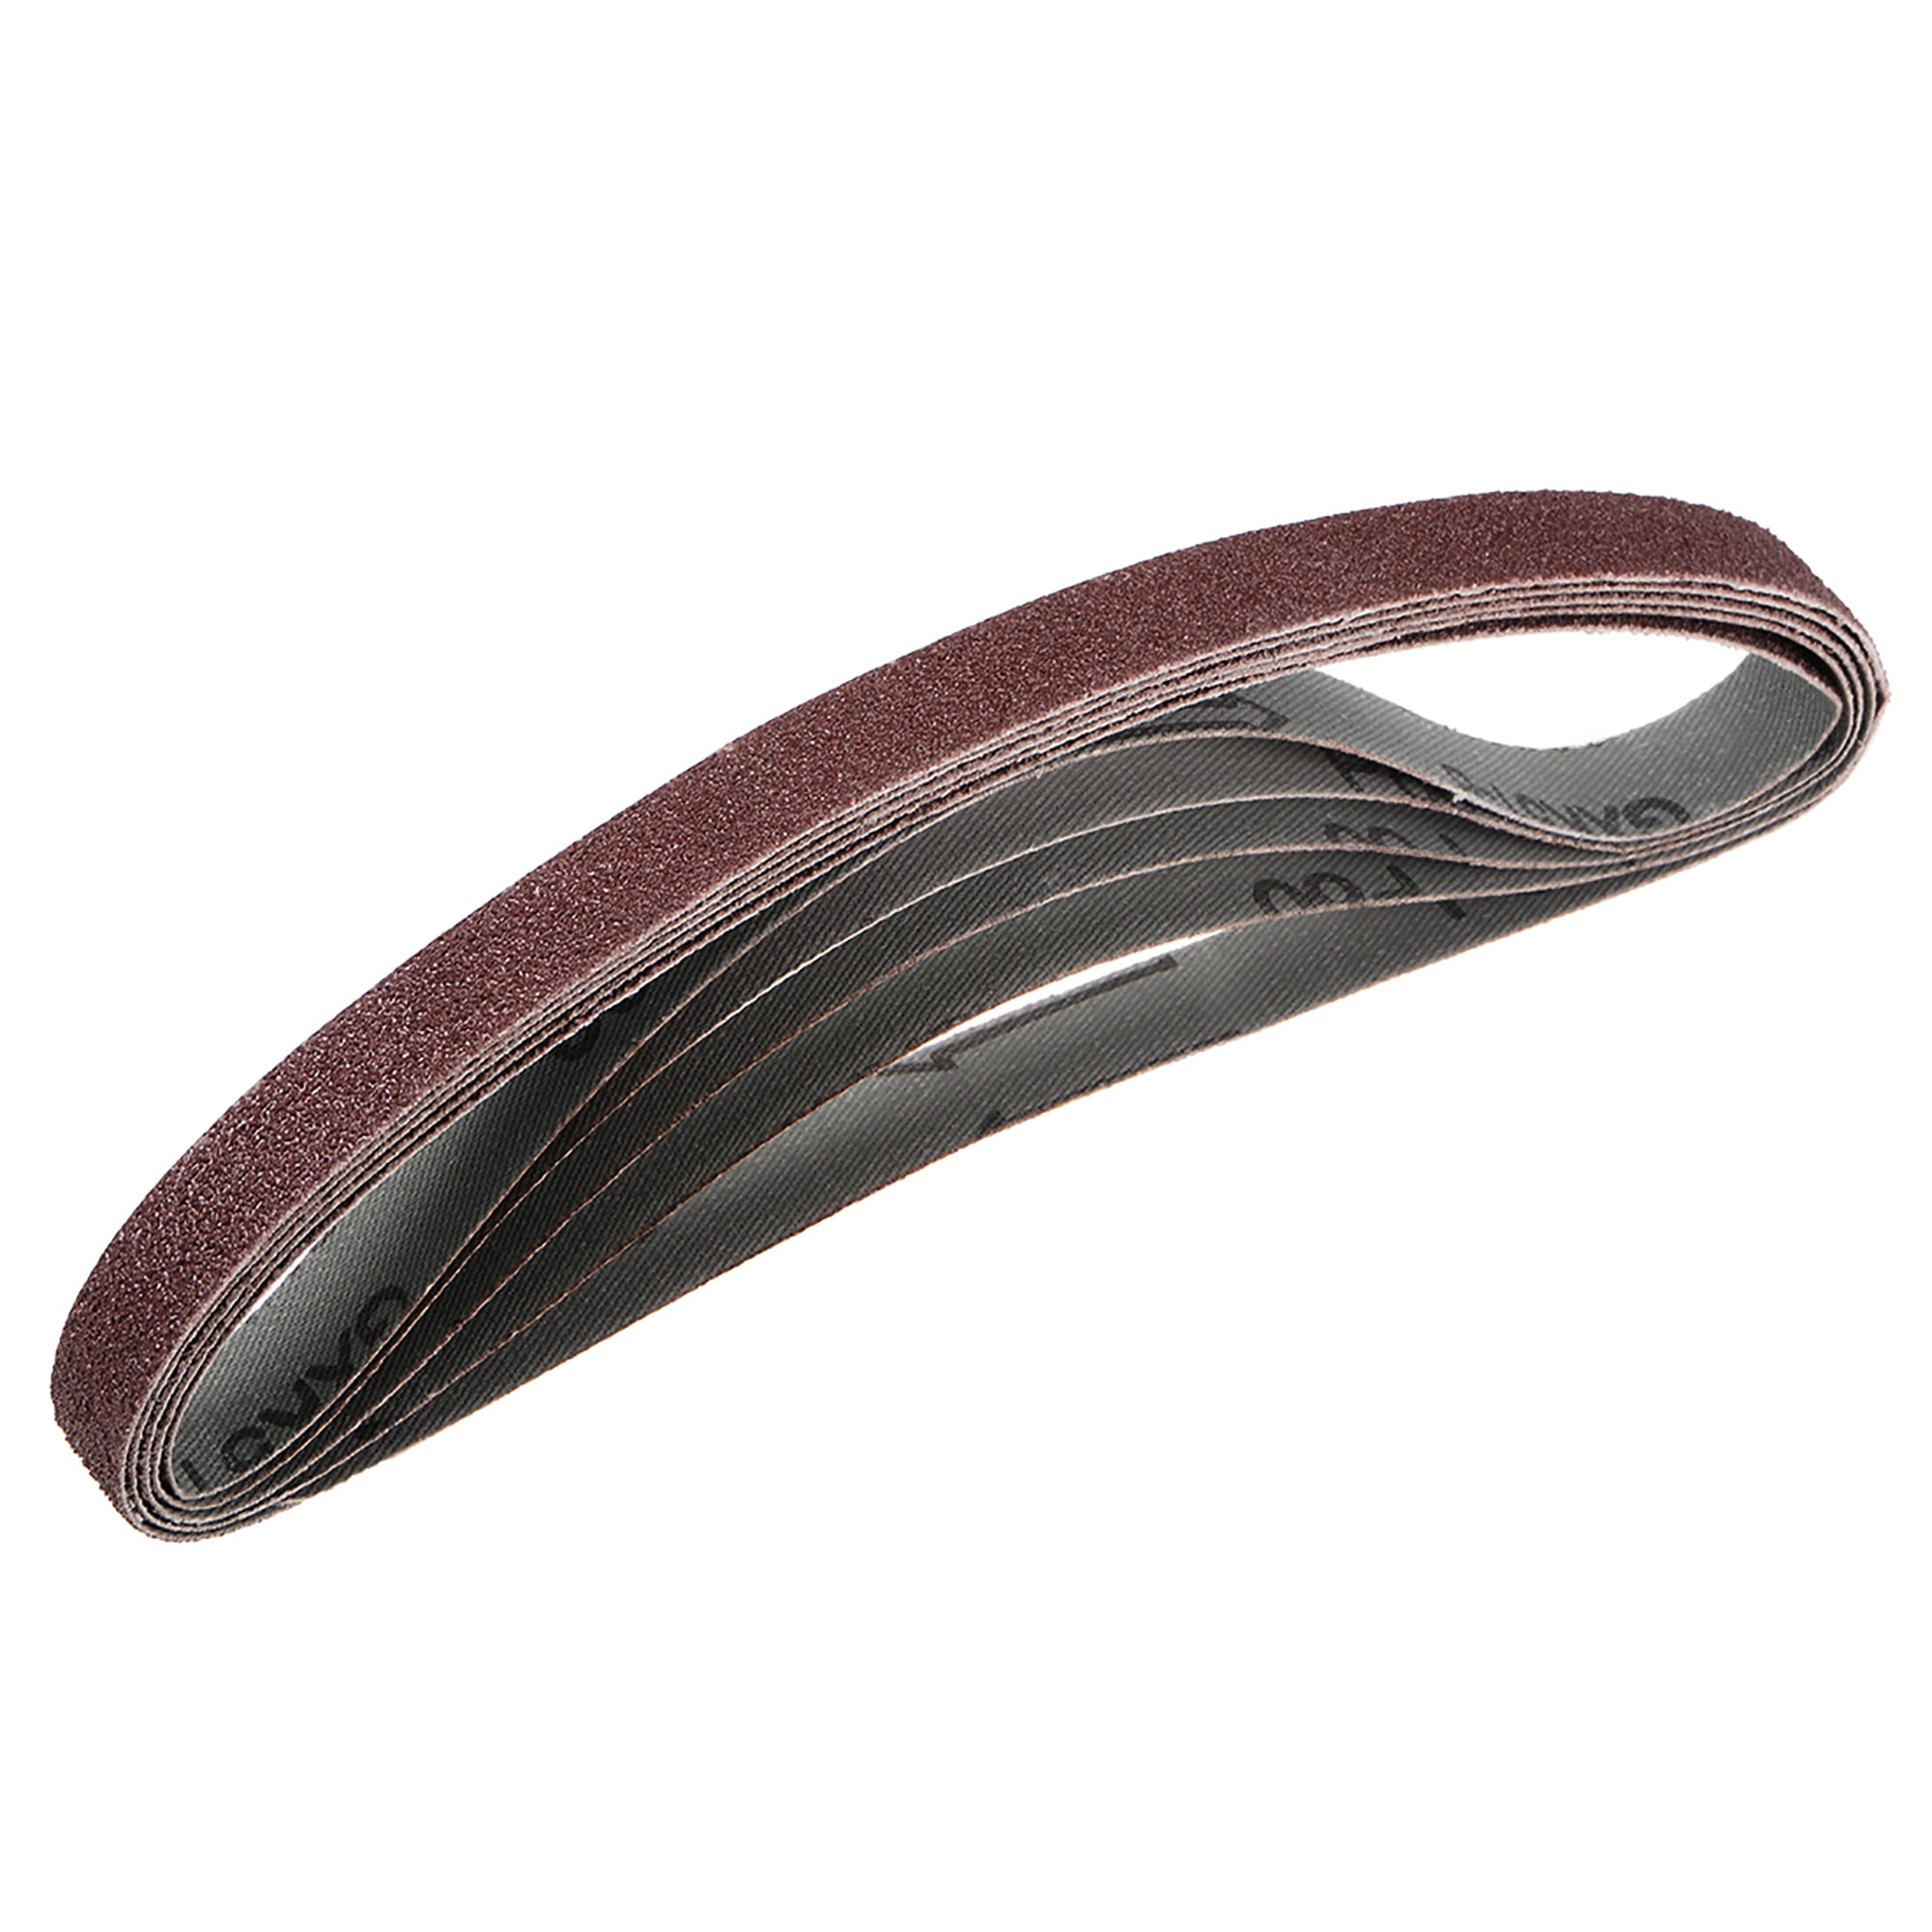 uxcell 1-inch x 21-inch 800-Grits Sanding Belt Aluminum Oxide Sand Belts for Belt Sander 5pcs 